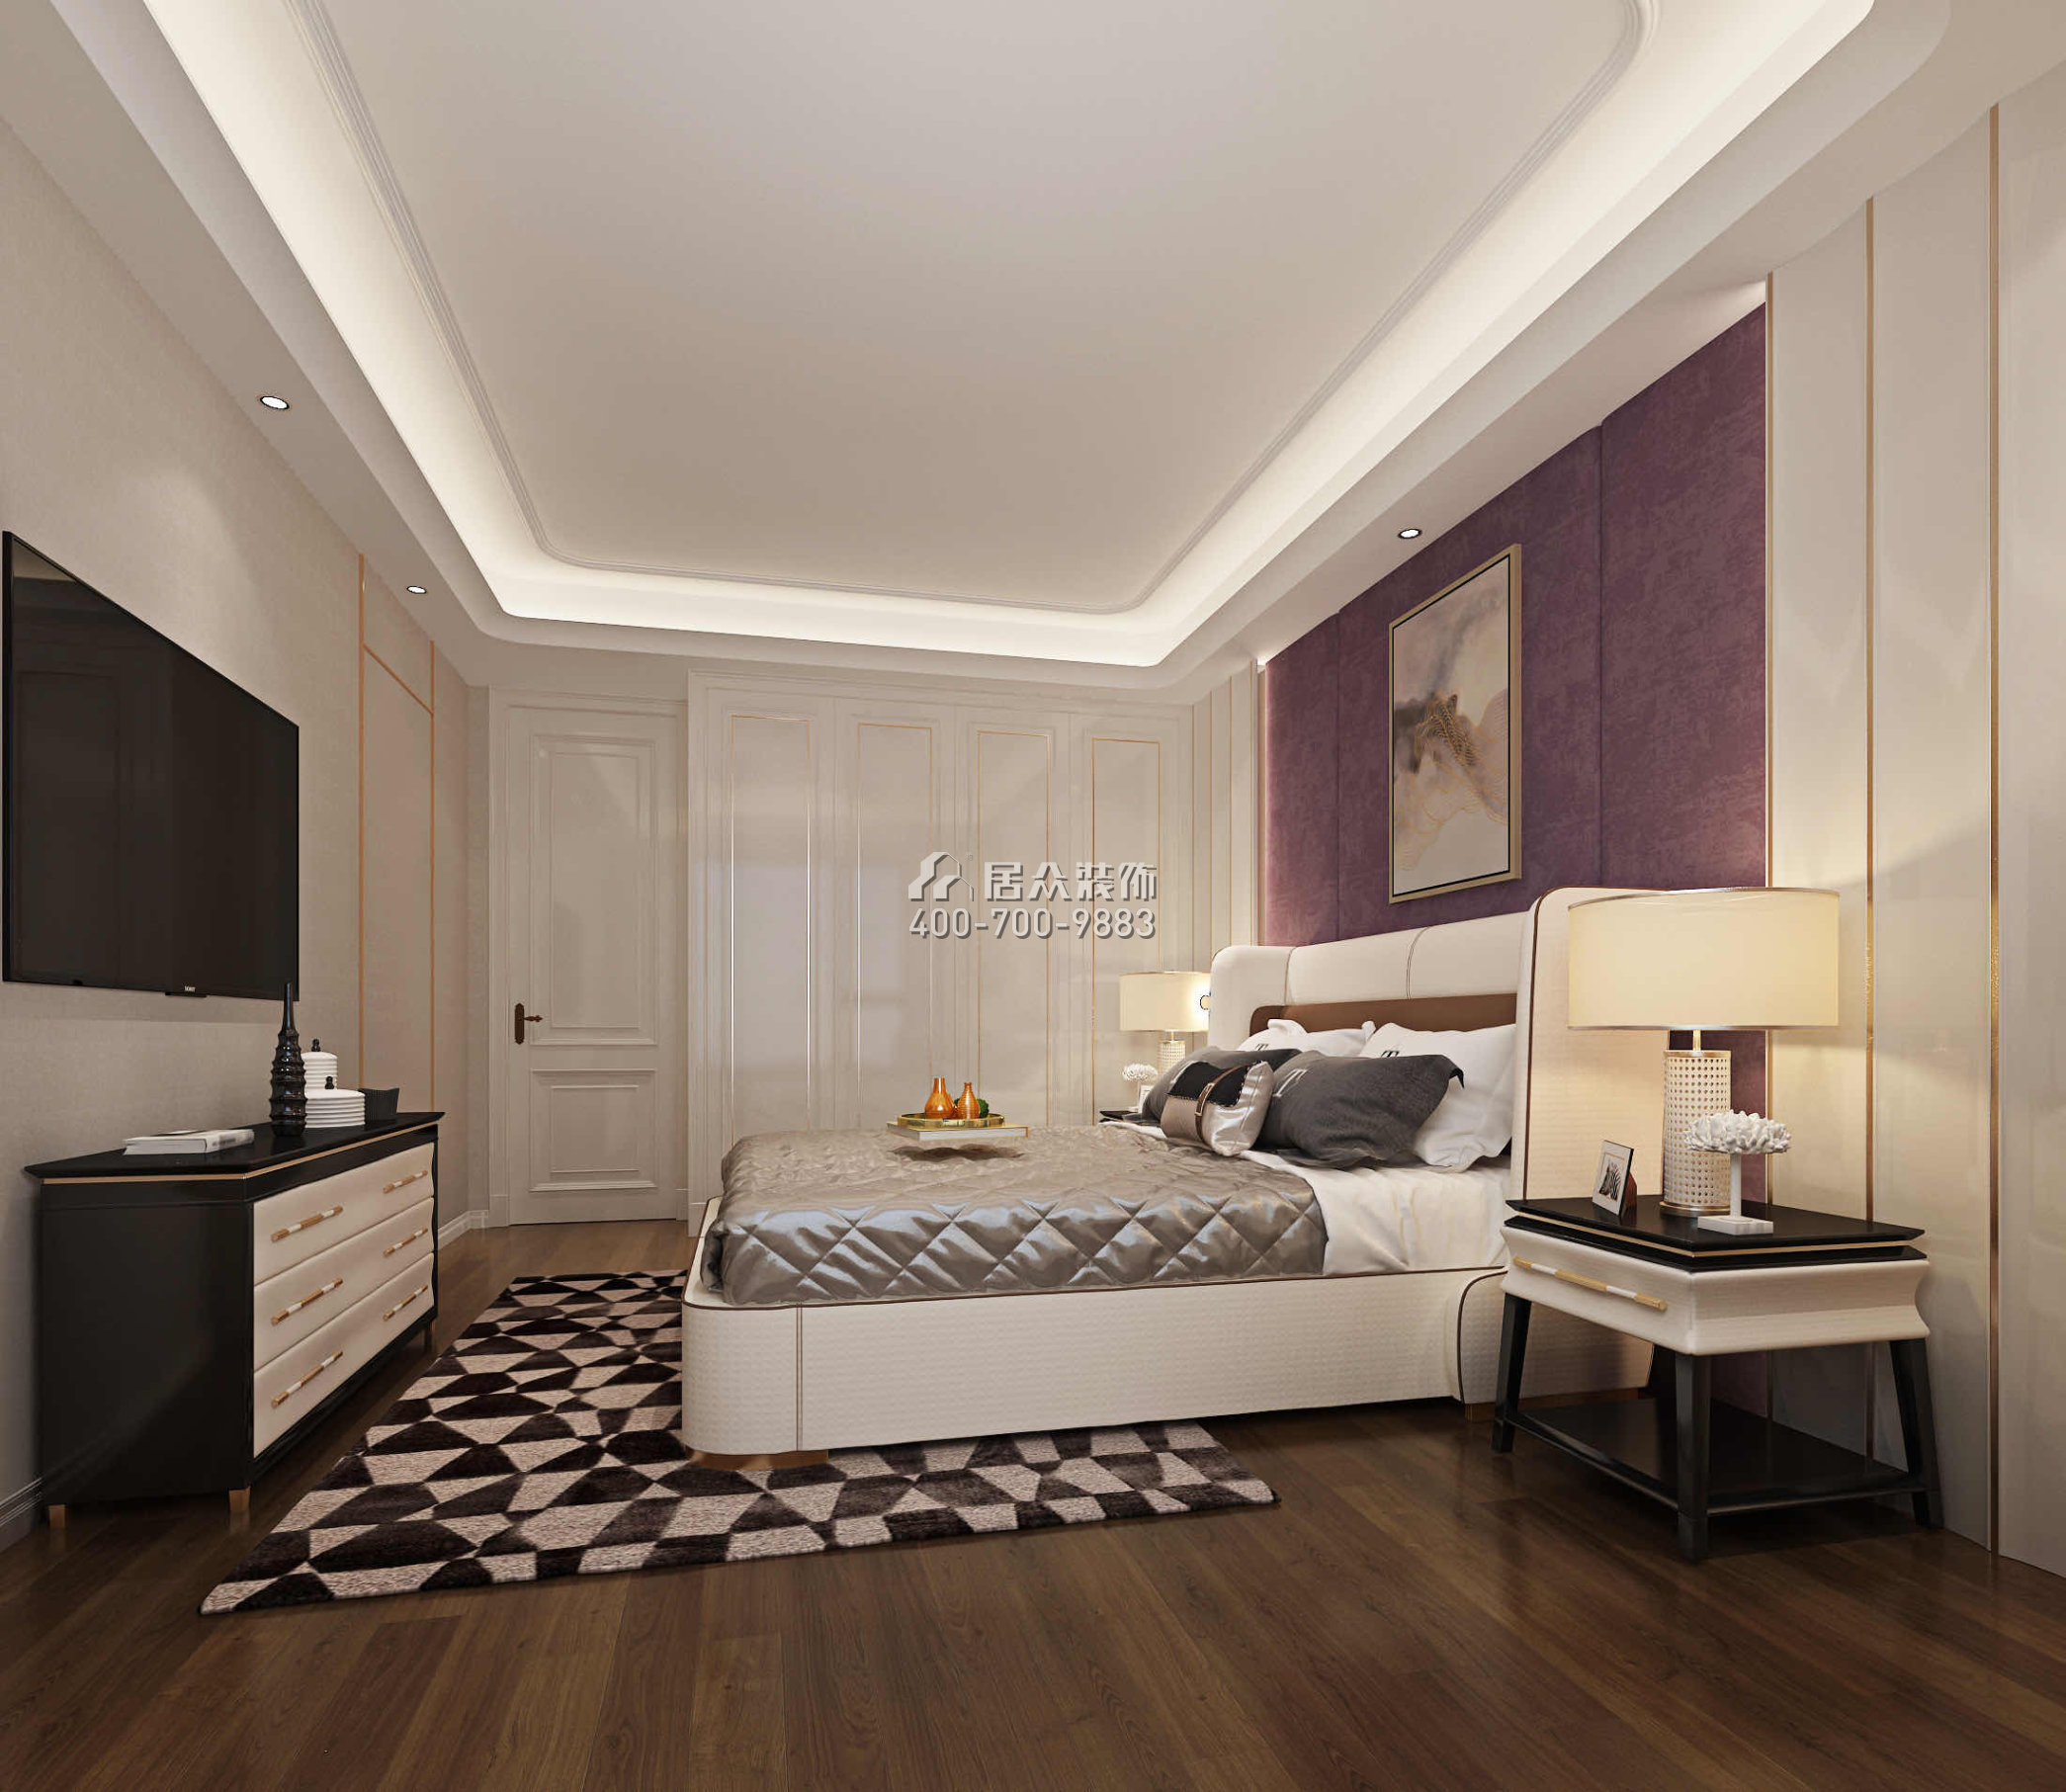 中鐵元灣205平方米歐式風格平層戶型臥室裝修效果圖